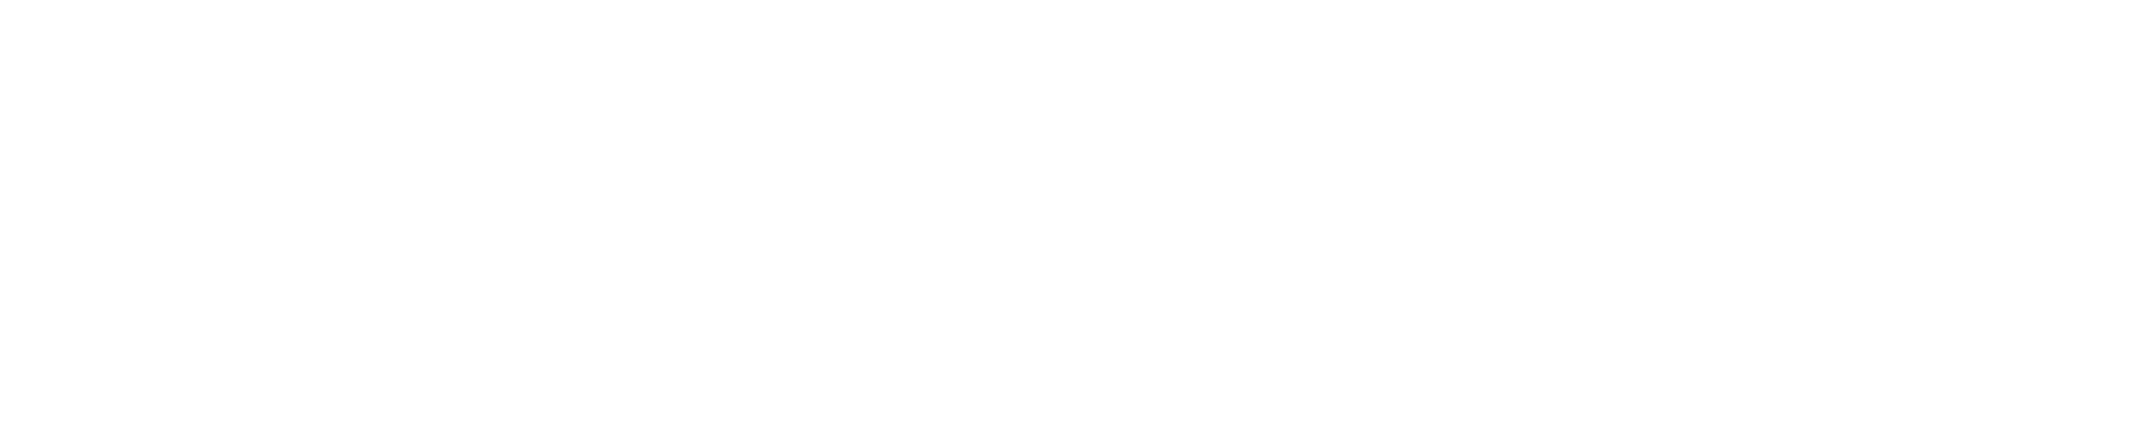 Helleheide_LogoWeiss